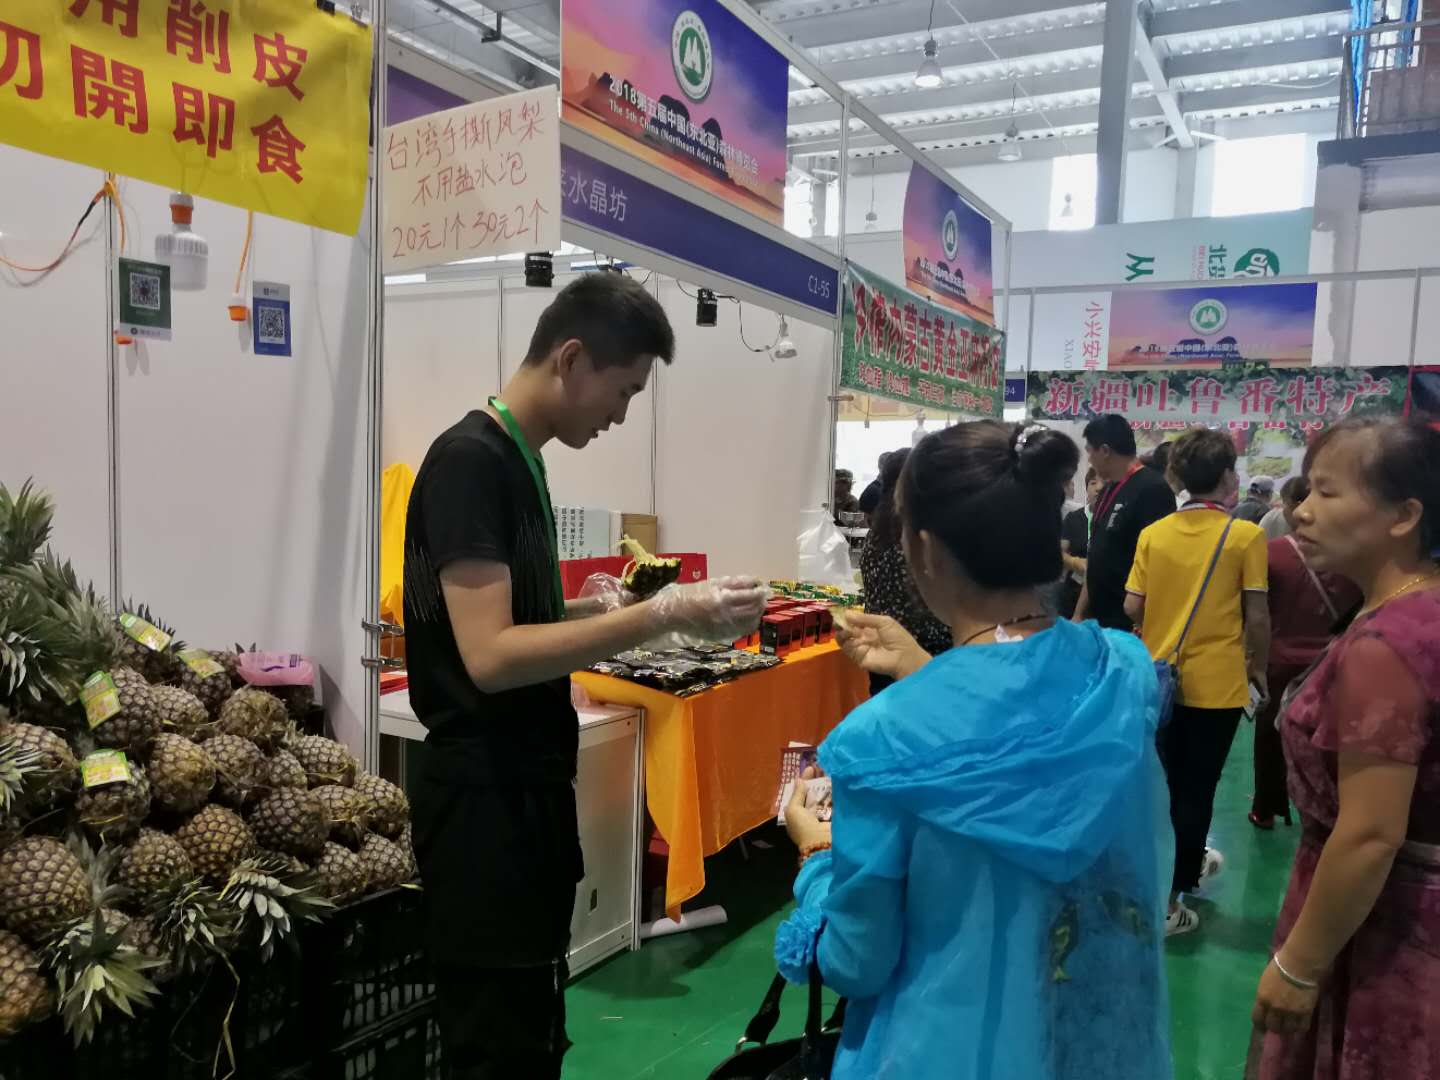 在东北亚及台湾食品展区,新鲜的手撕凤梨、芒果、甜橙等新鲜水果深受林都百姓的喜爱,大家相继品尝购买正1